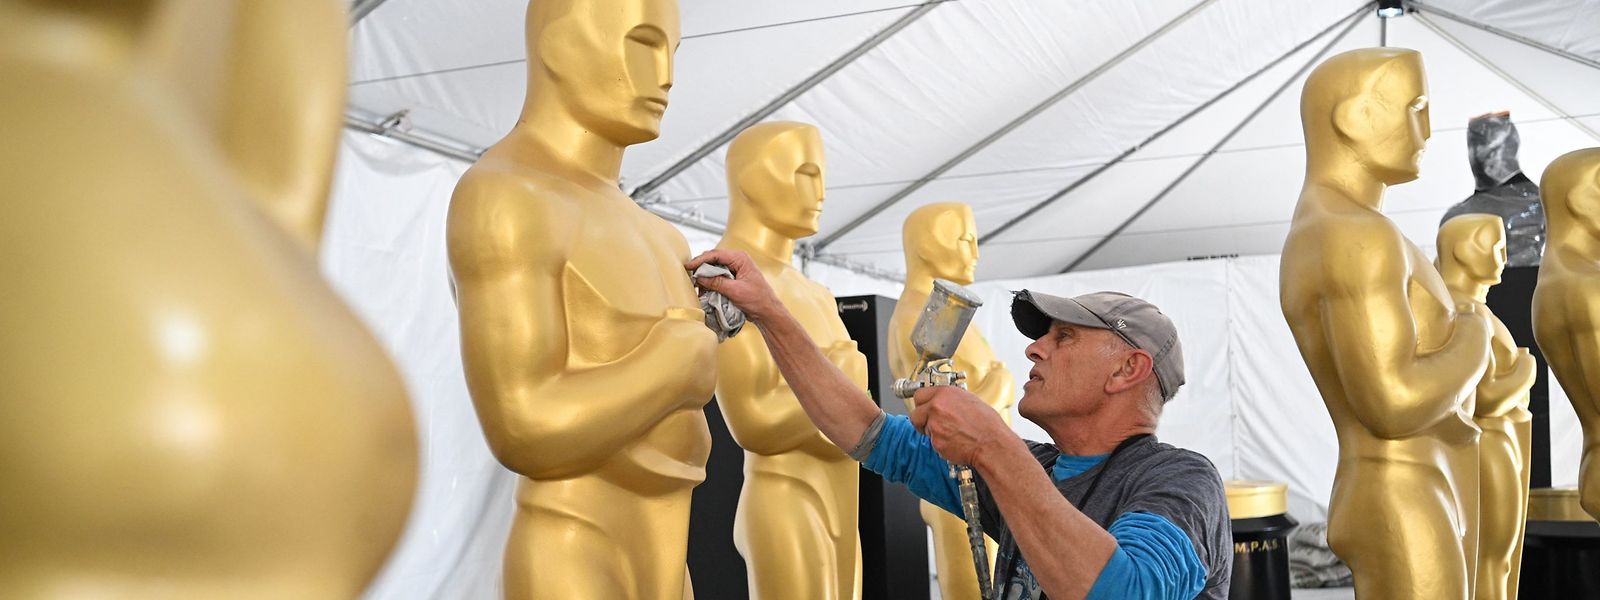 Der Bühnenbildner Michael Thomas beim Bemalen der Dekors zur 95. Oscarverleihung in Hollywood.